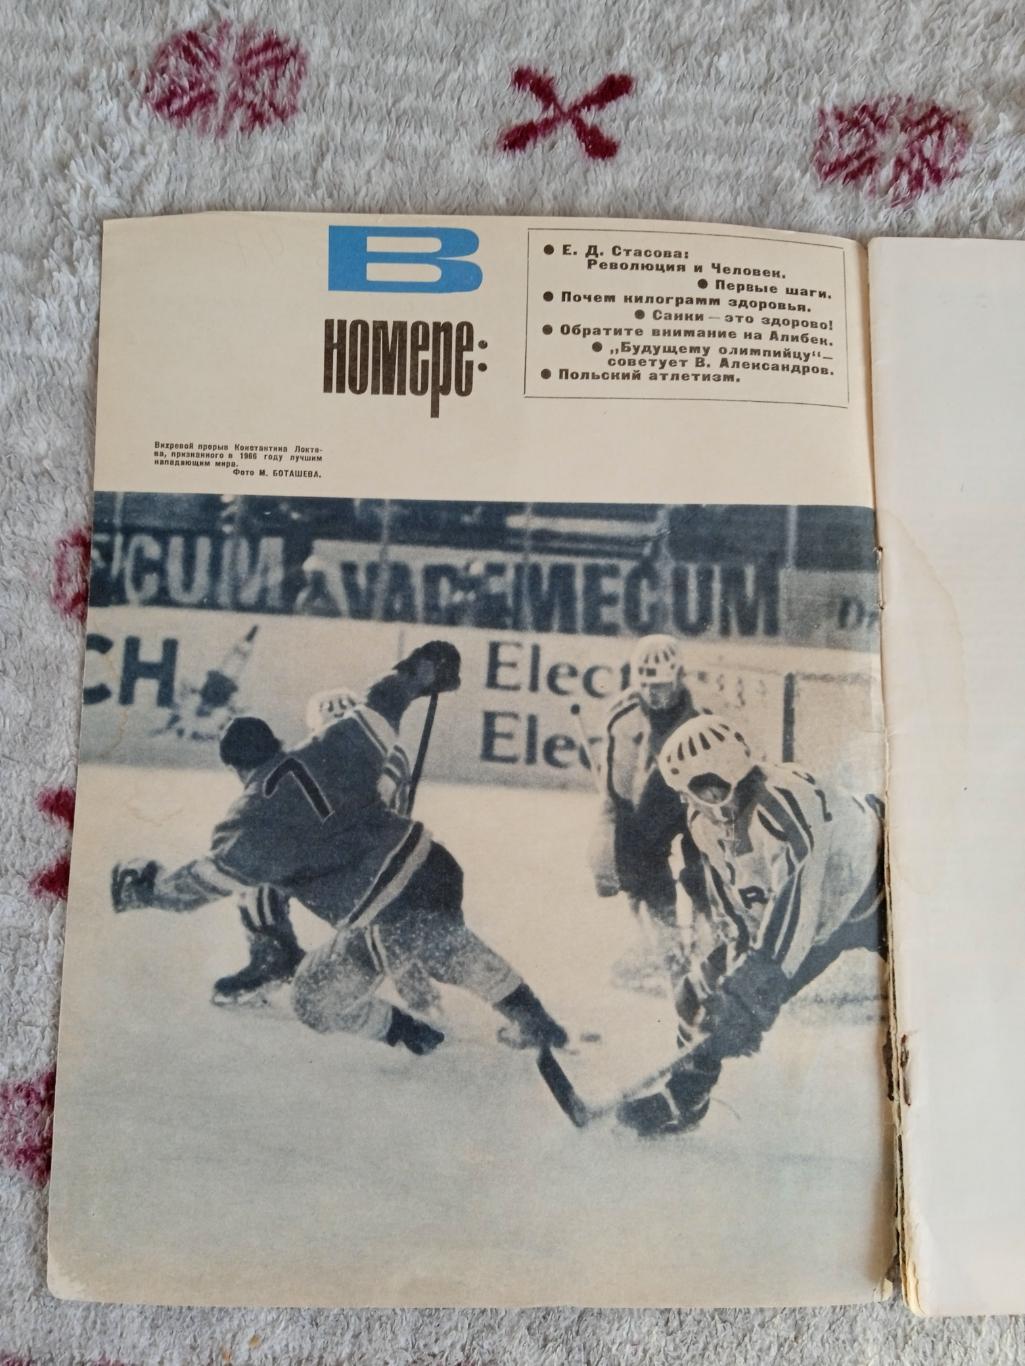 Журнал.Физкультура и спорт № 11 1966 г. (ФиС). 1